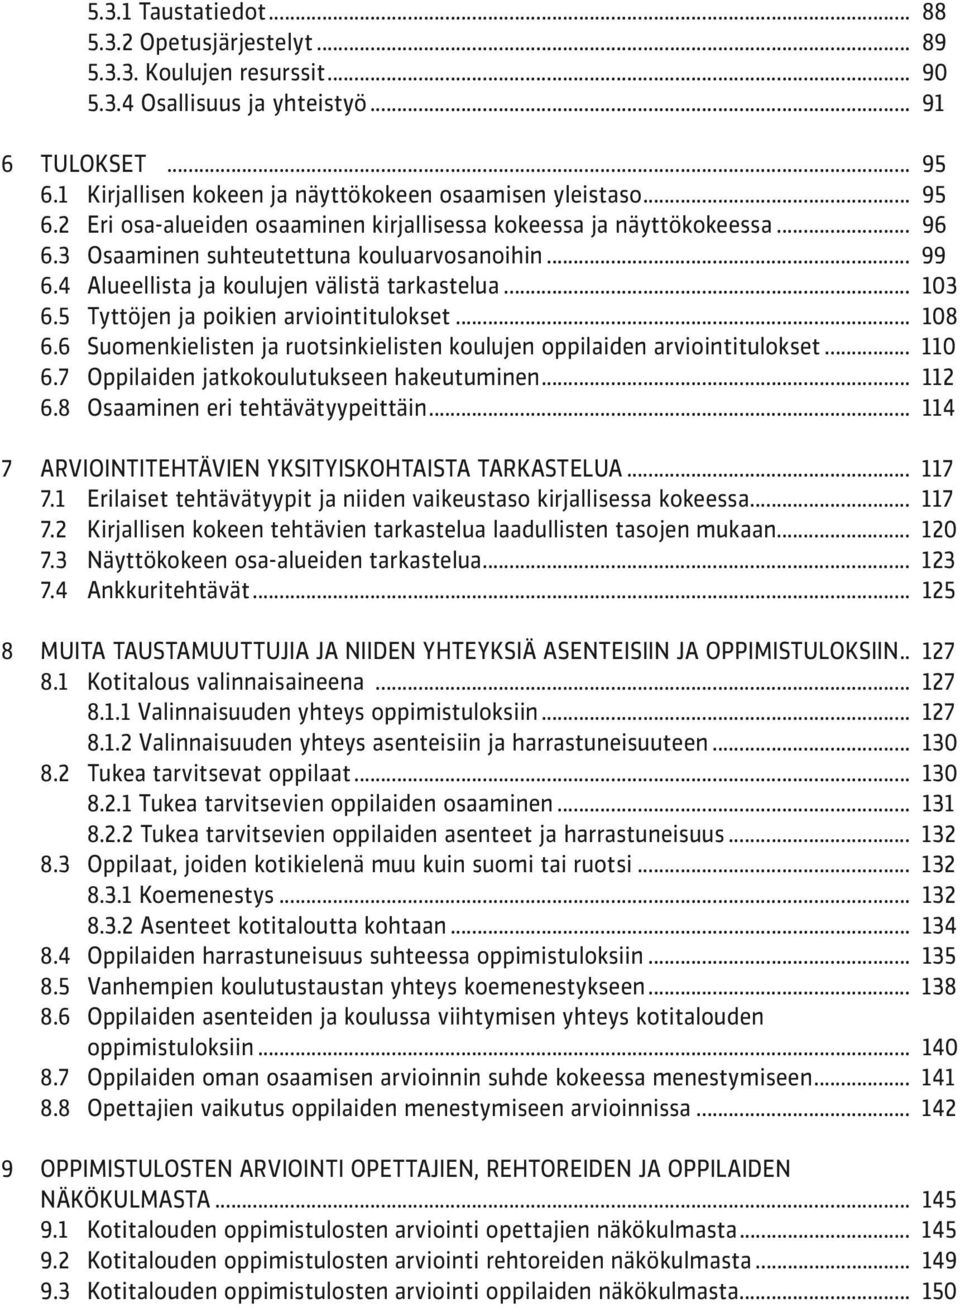 5 Tyttöjen ja poikien arviointitulokset... 108 6.6 Suomenkielisten ja ruotsinkielisten koulujen oppilaiden arviointitulokset... 110 6.7 Oppilaiden jatkokoulutukseen hakeutuminen... 112 6.